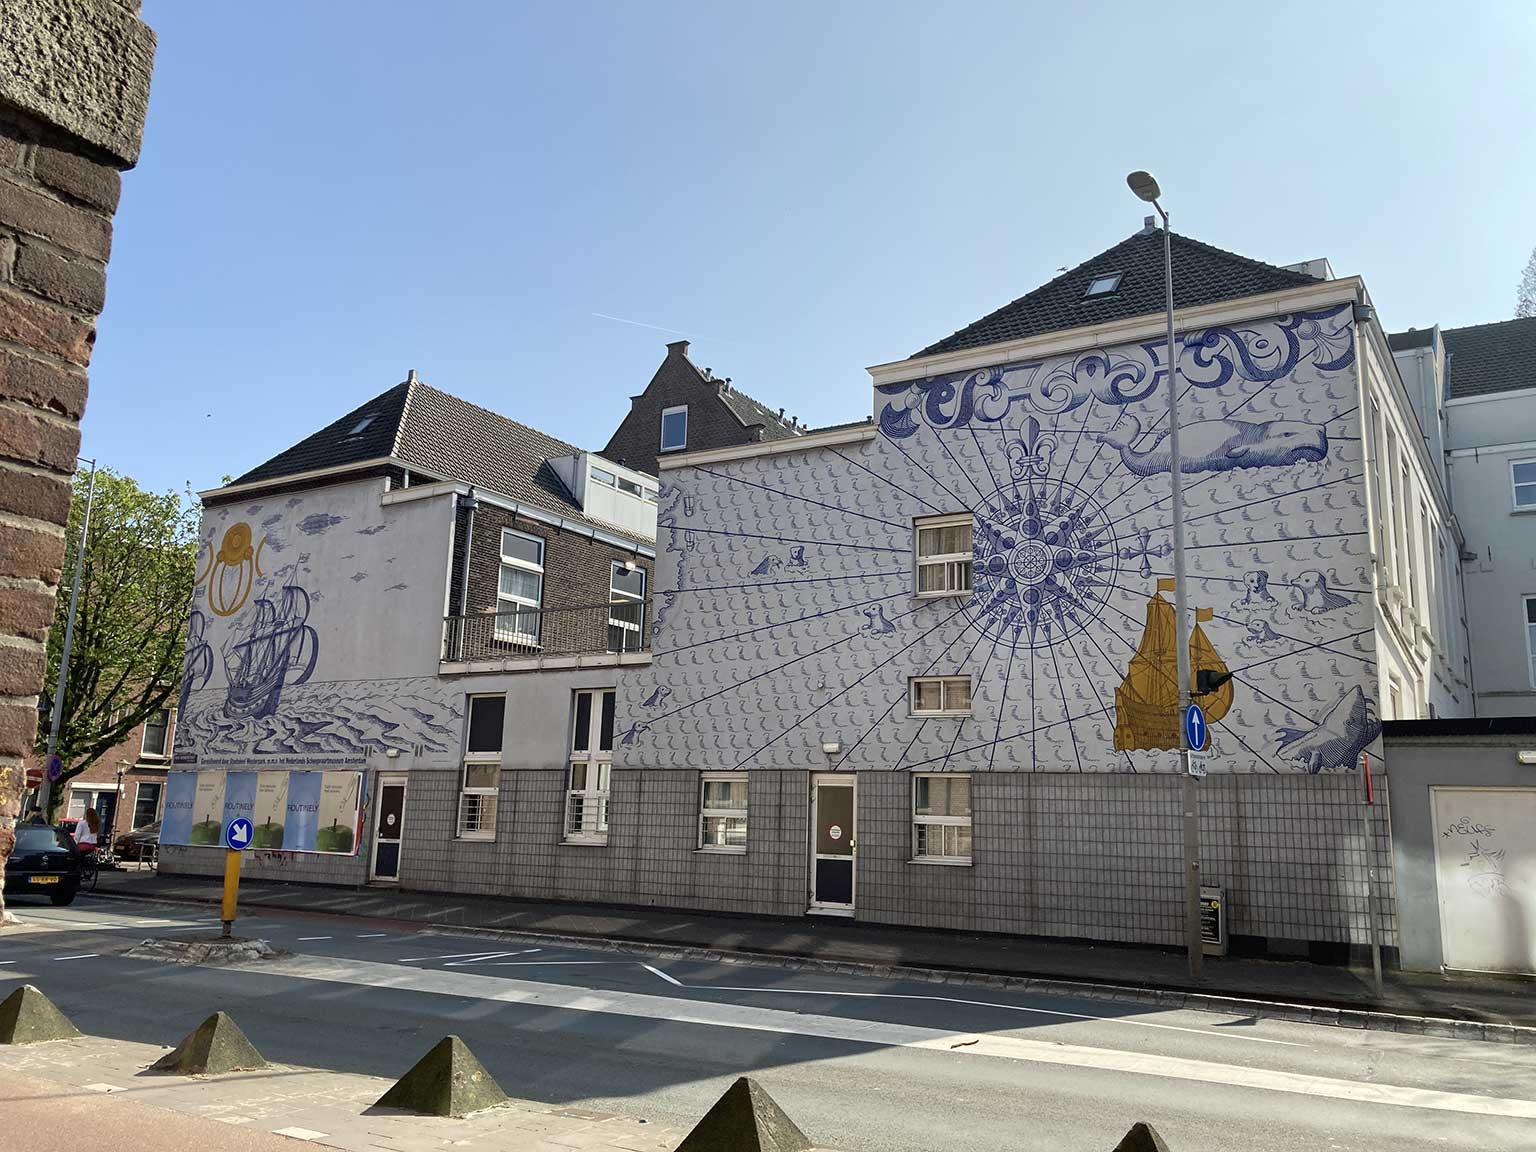 Mural De Roggeveen by Klaartje Bruyn on Van Diemenstraat, Amsterdam